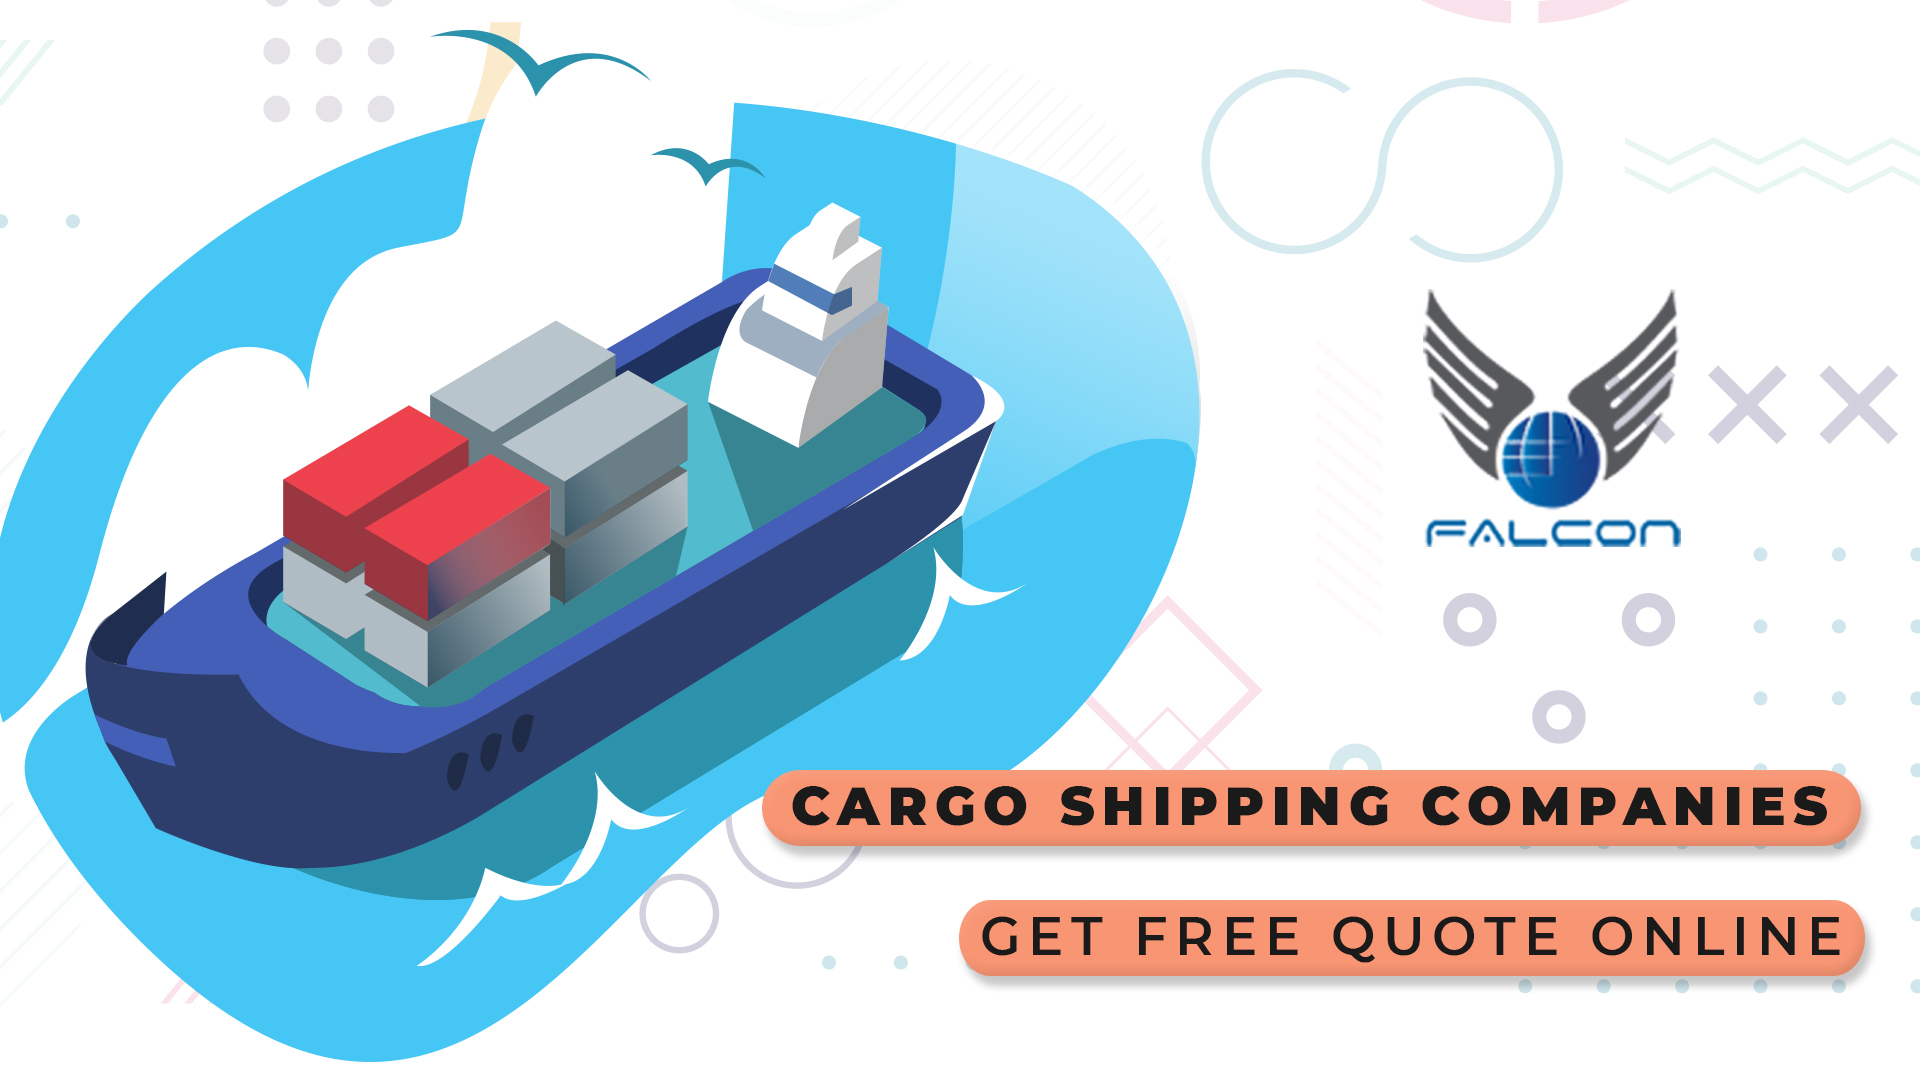 Cargo shipping companies